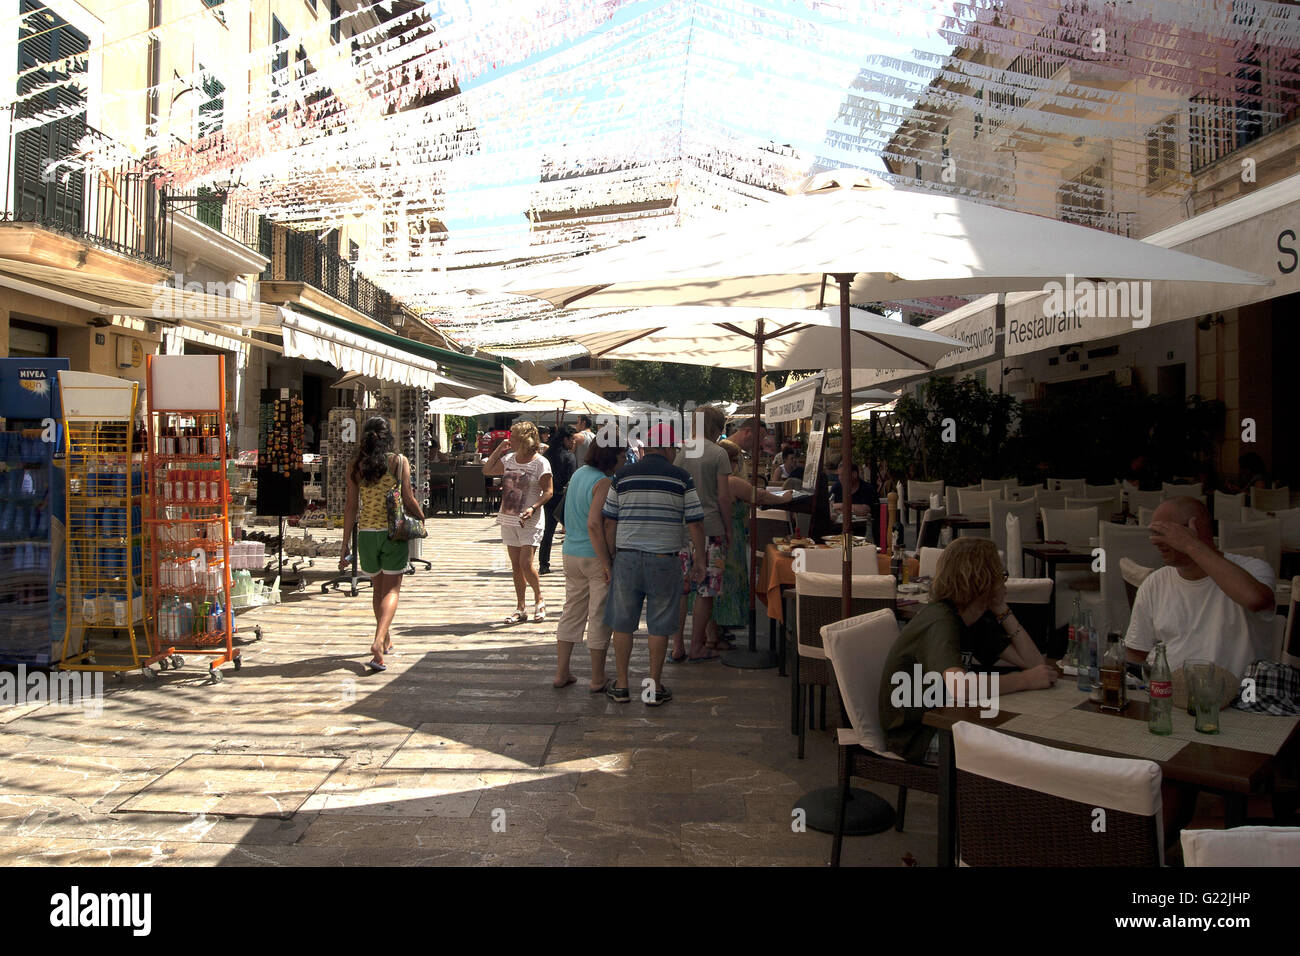 Una bella foto di una trafficata strada turistica ricca di caffetterie e negozi di souvenir in Palma de Mallorca, Spagna, Mare, turismo, vacanze Foto Stock